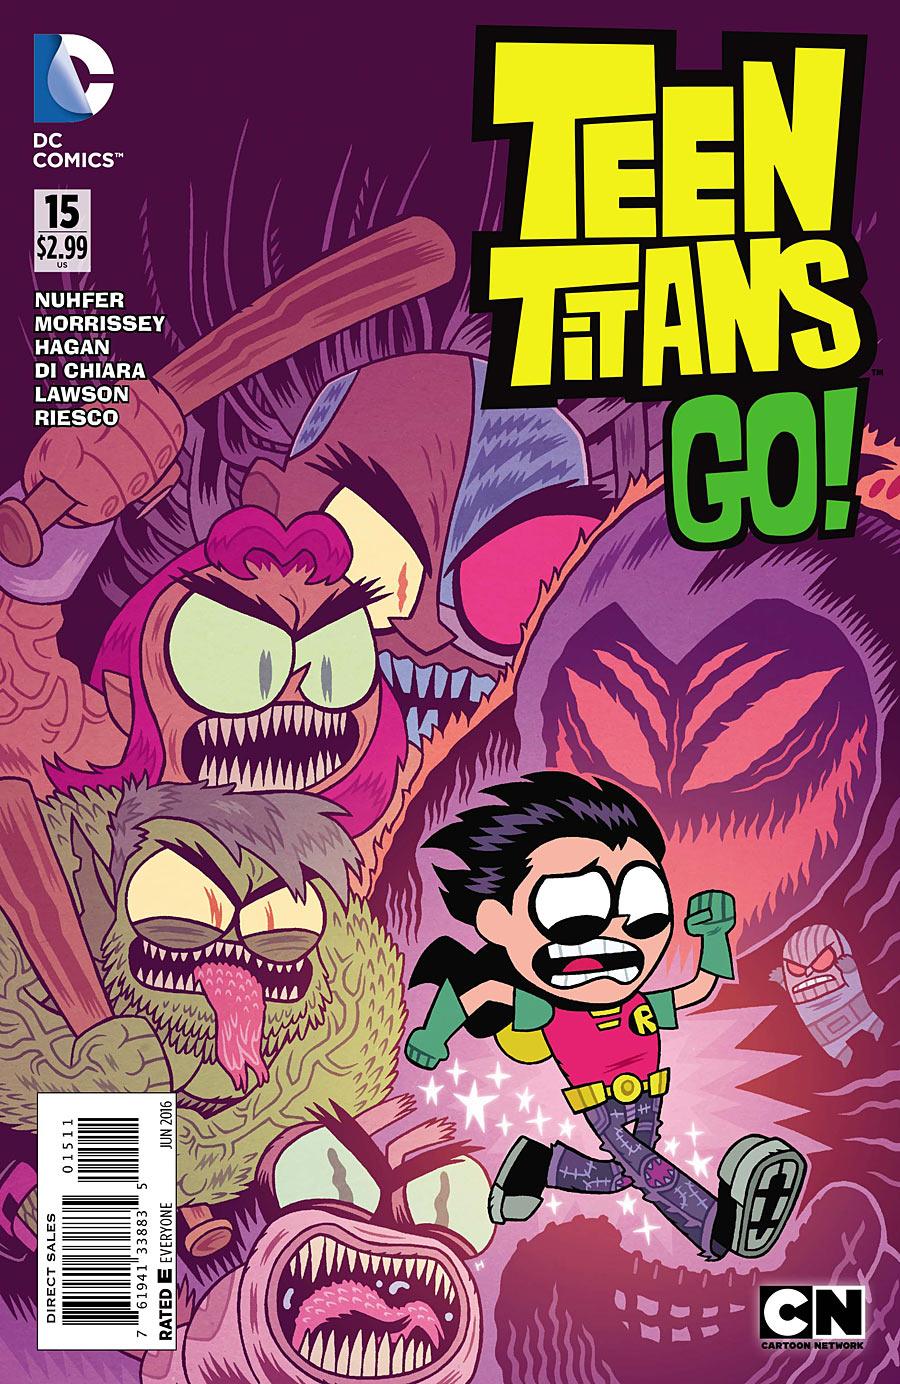 Teen Titans Go! Vol. 2 #15